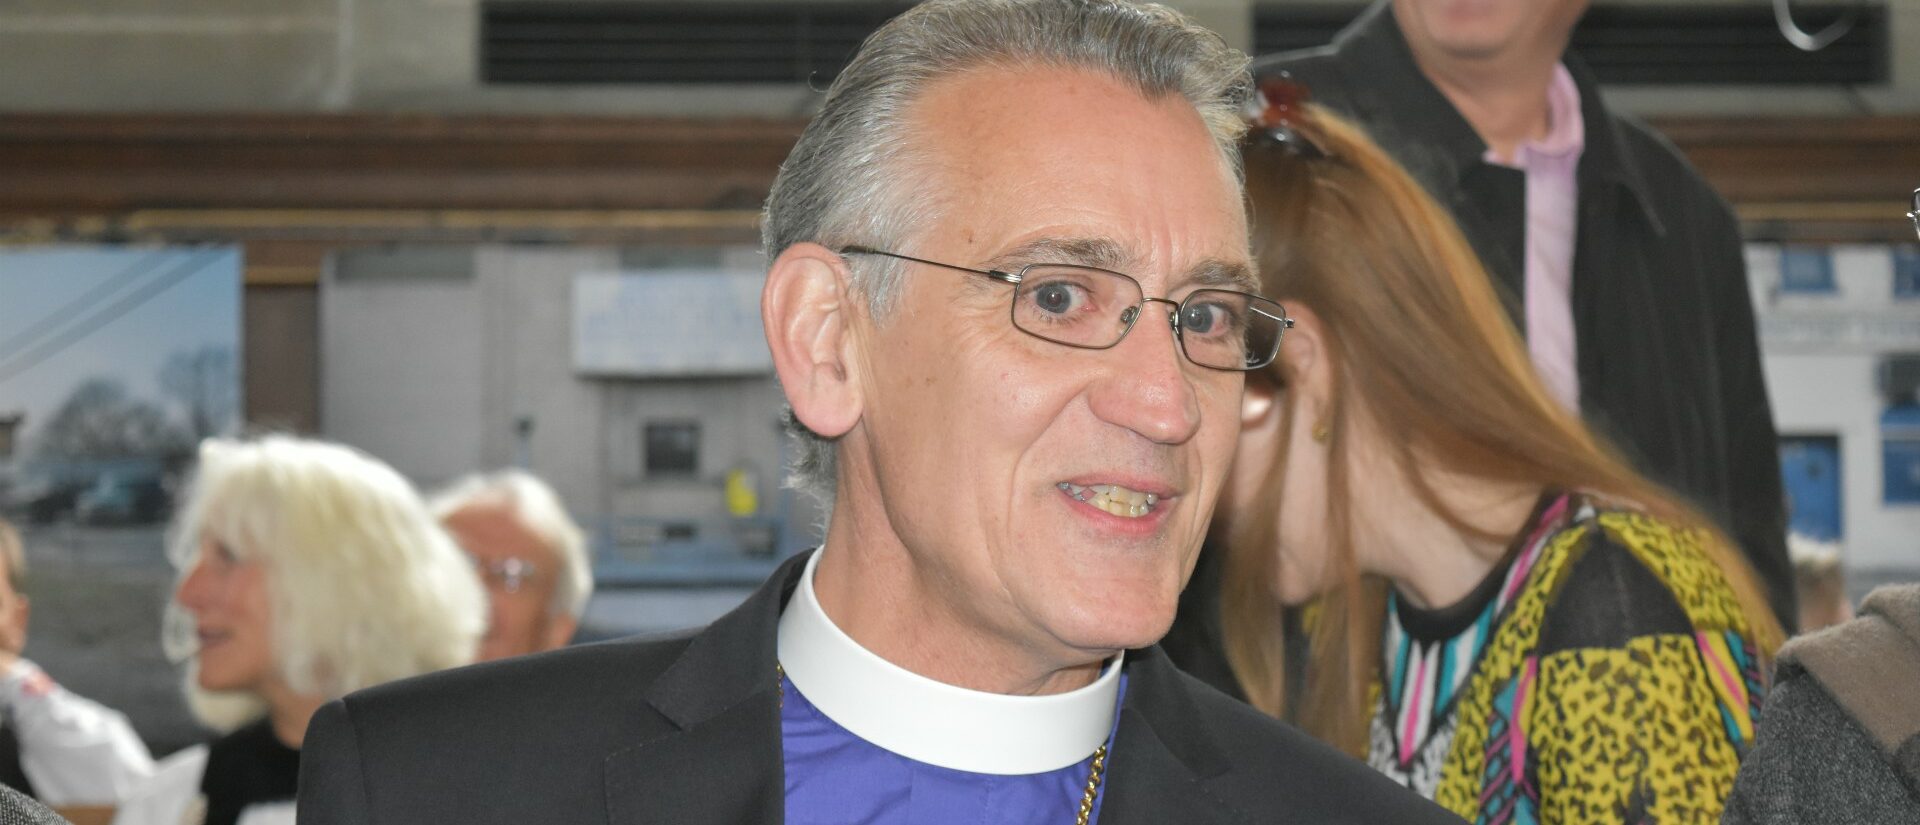 Mgr Harald Rein, évêque de l’Église catholique-chrétienne en Suisse, depuis 2009  | © Jacques Berset